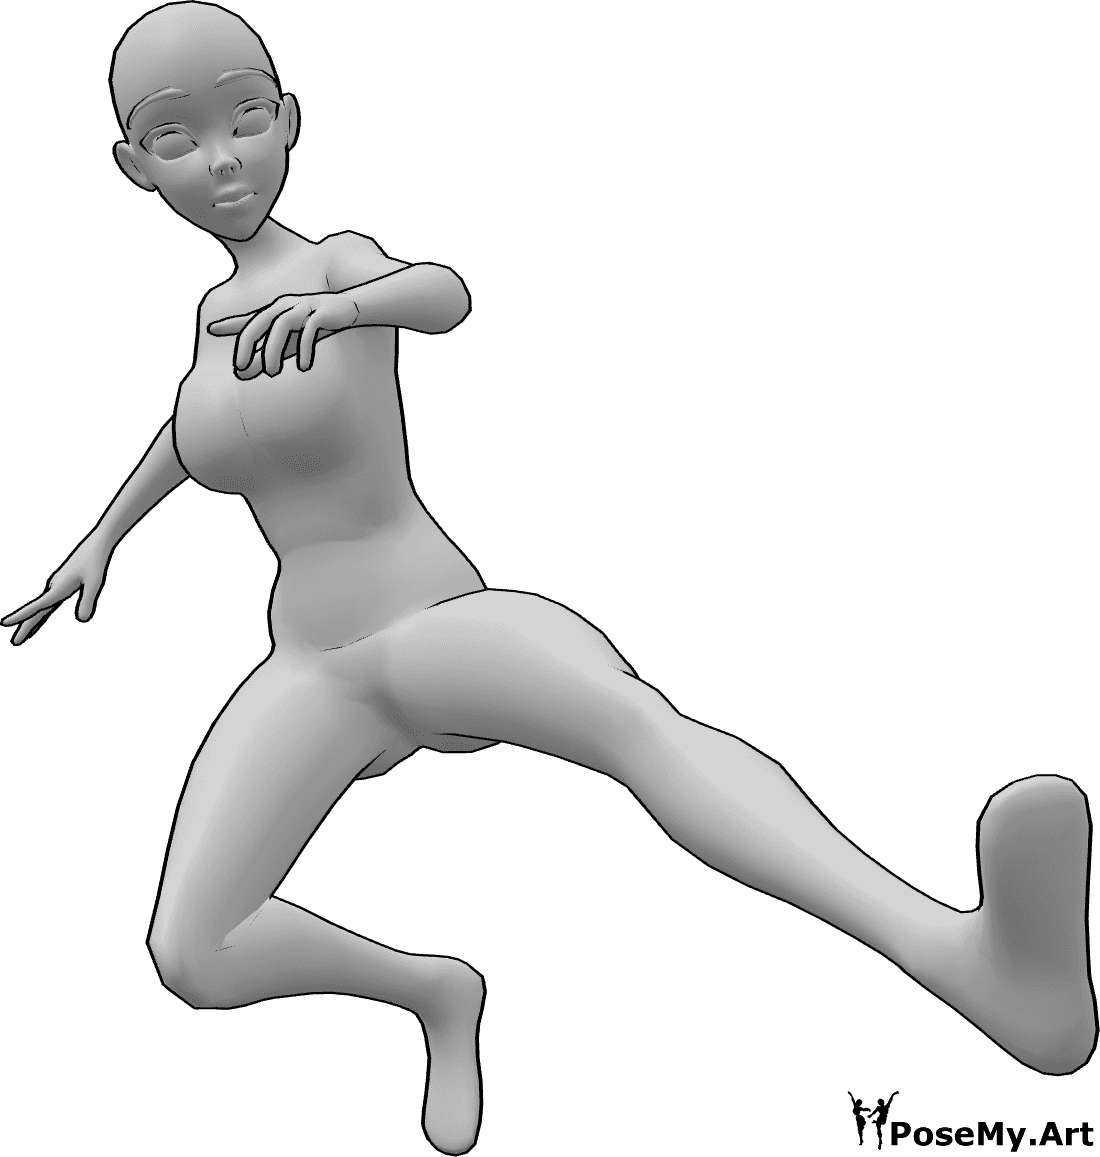 Posen-Referenz- Anime dynamische Kicking Pose - Anime weiblich springt und tritt in der Luft mit ihrem linken Fuß, dynamische Kicking Pose